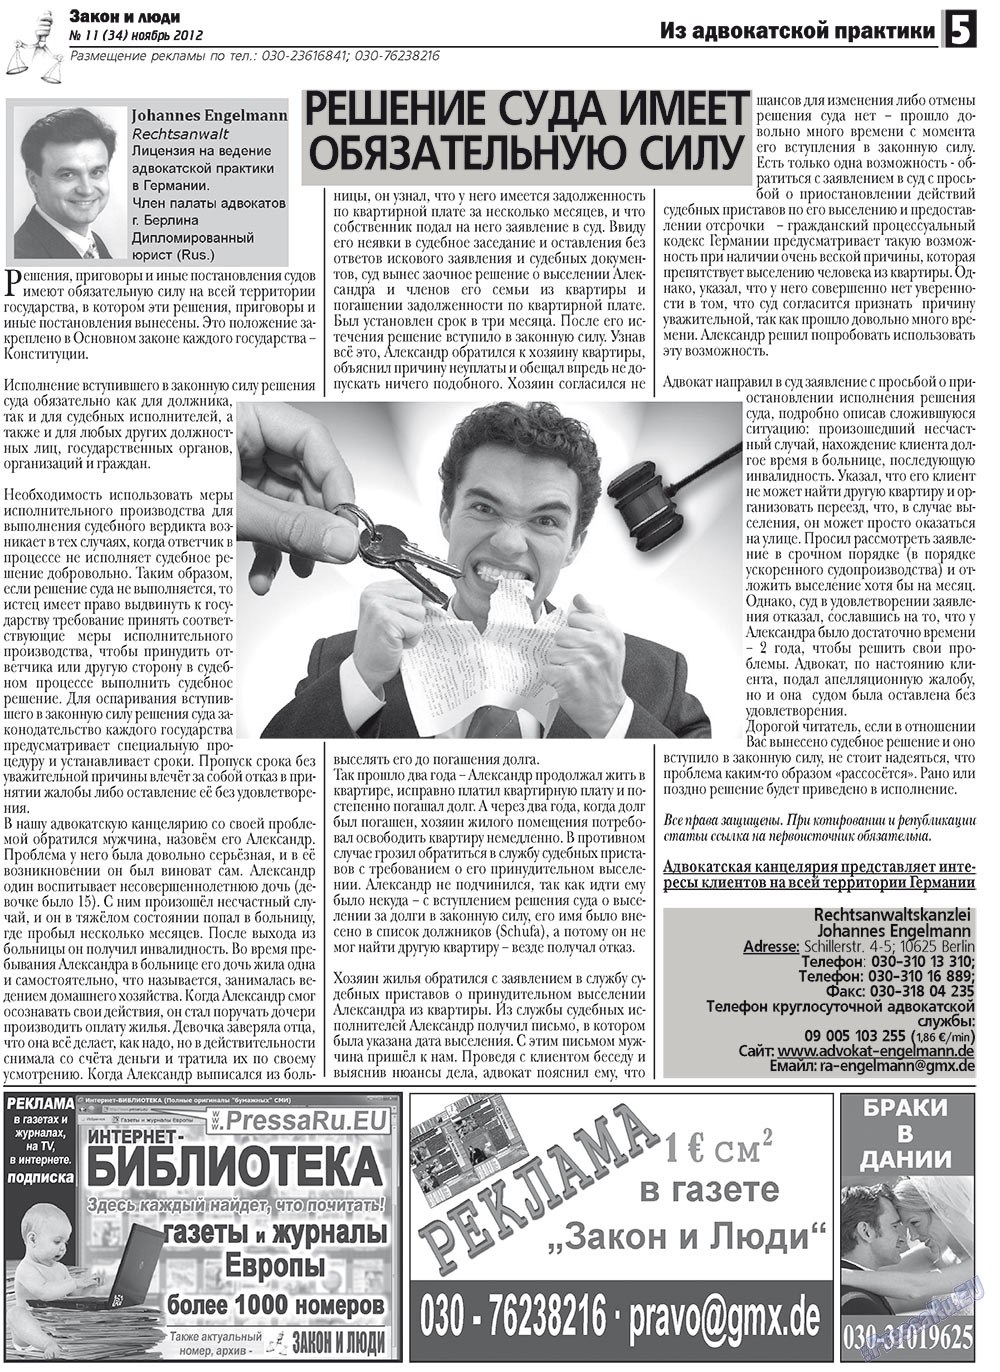 Закон и люди, газета. 2012 №11 стр.5